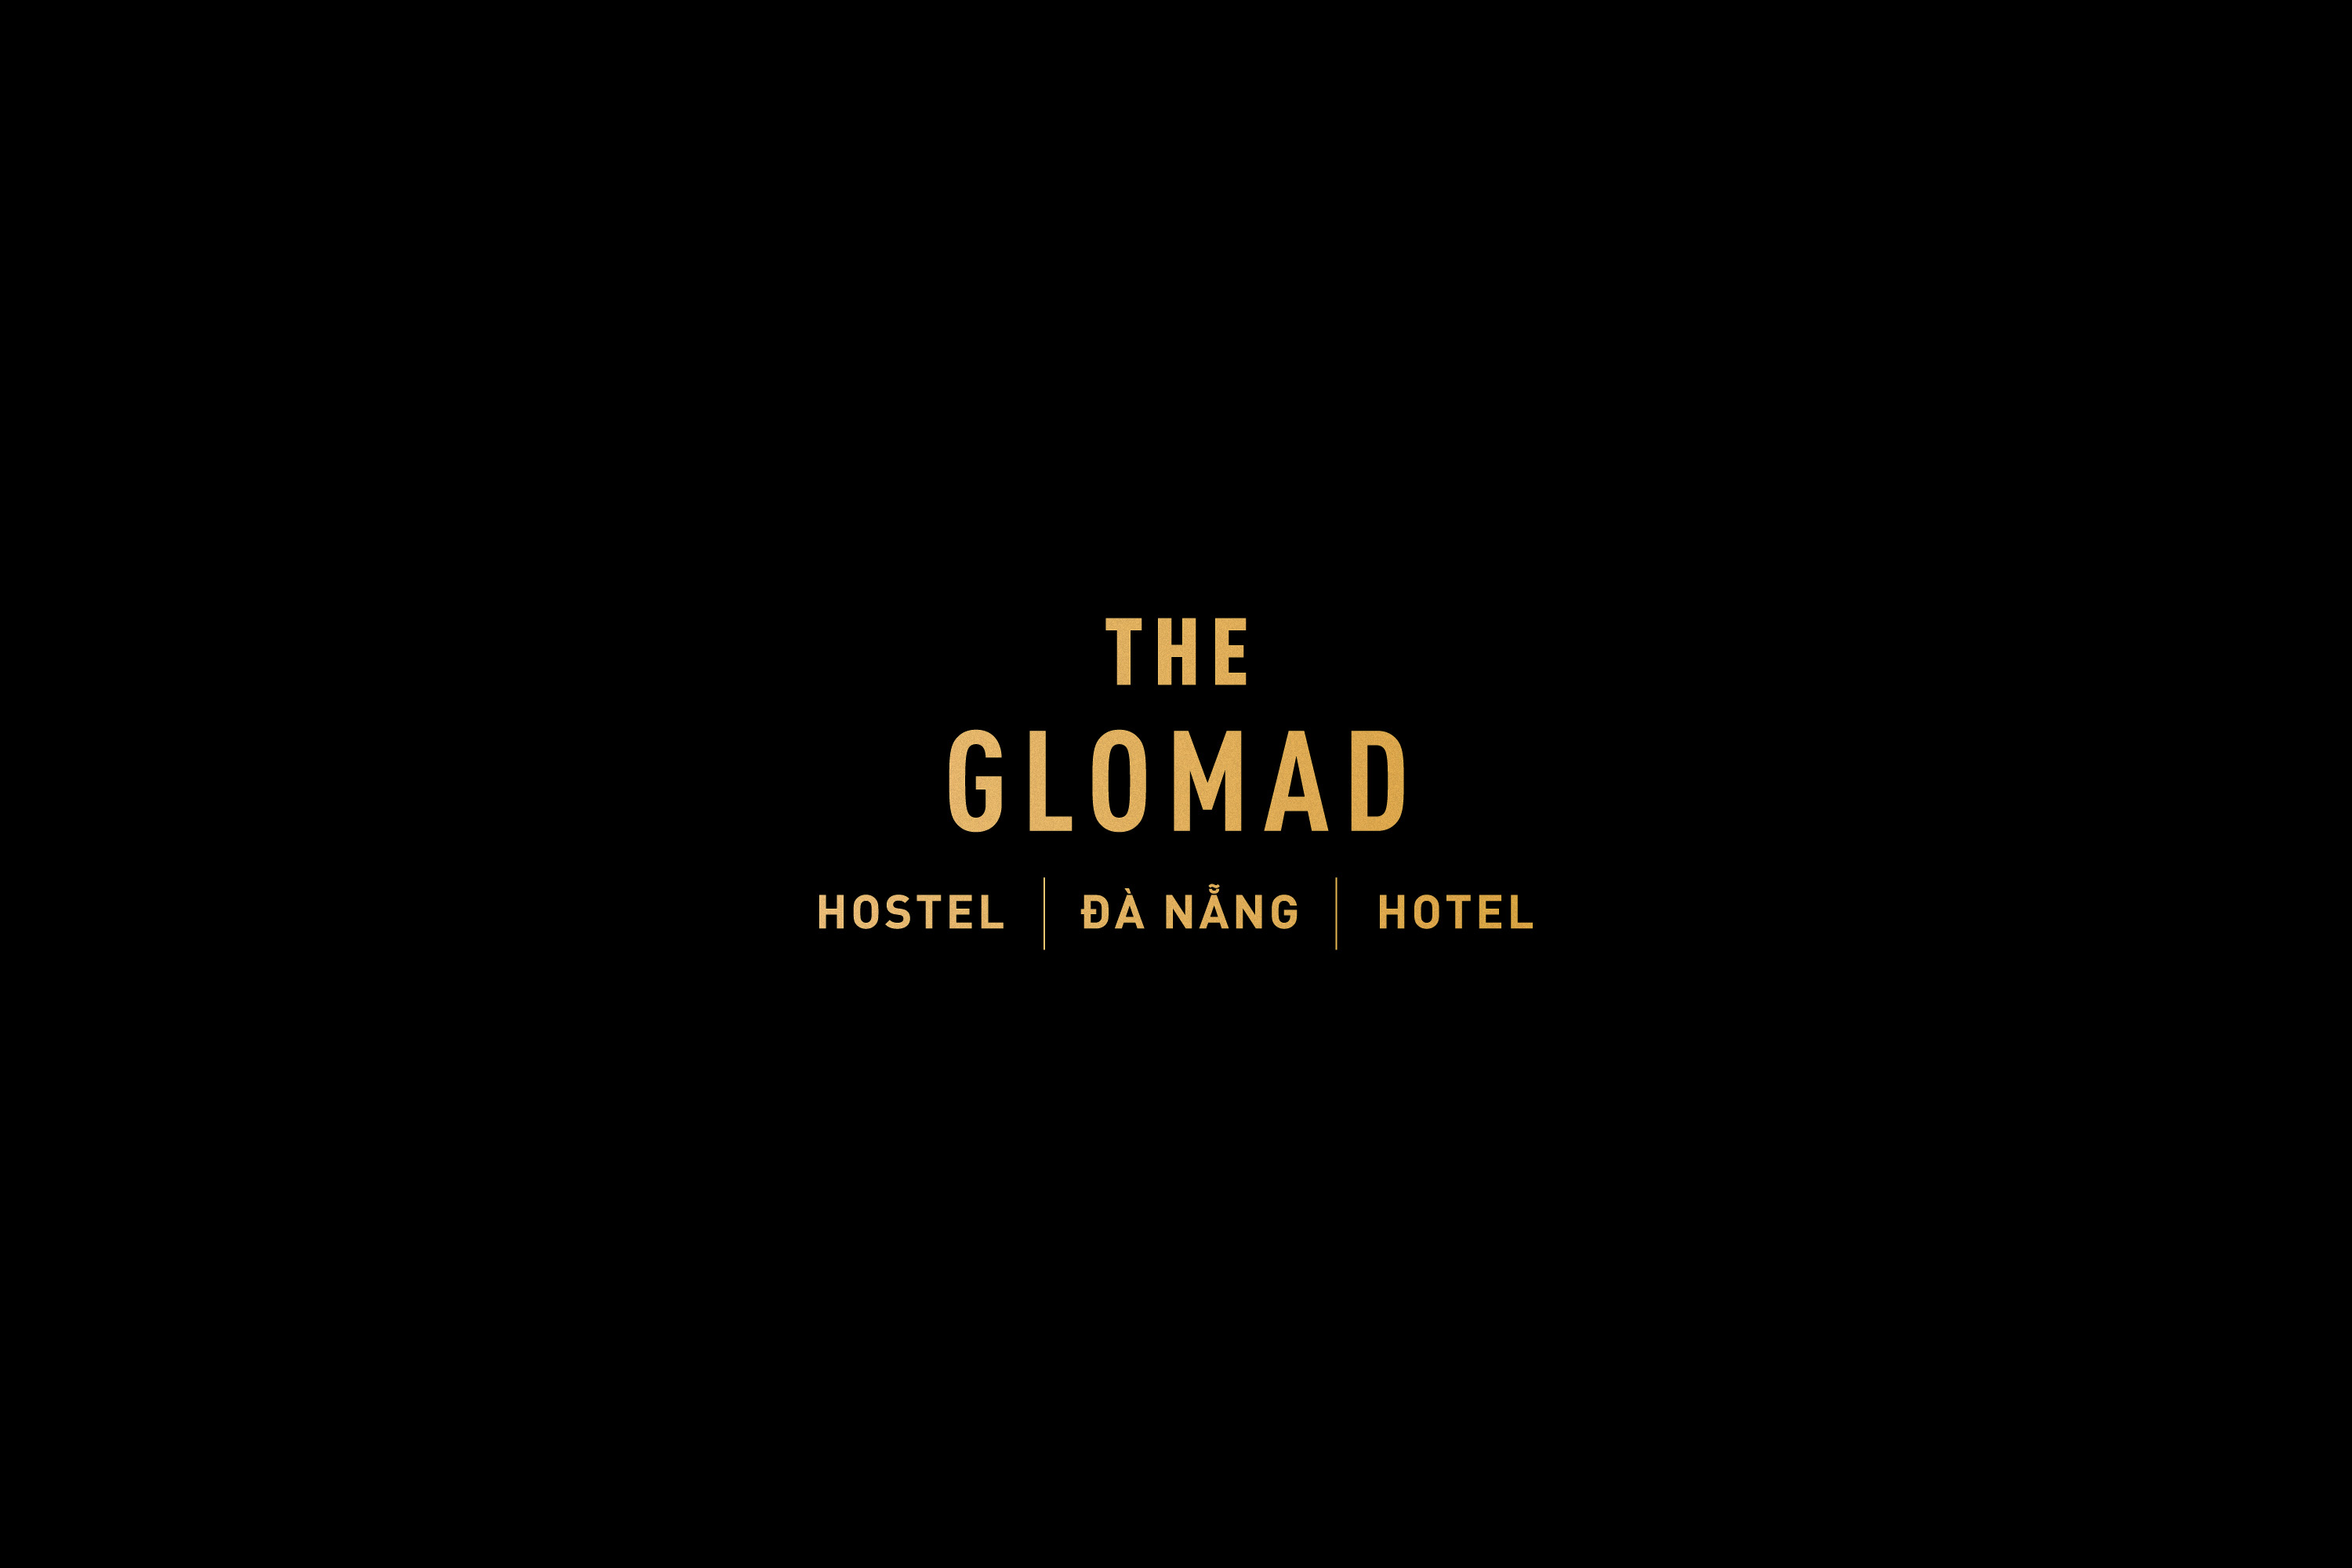 mejor-diseno-tarjeta-hotel-glomad-hotel-52